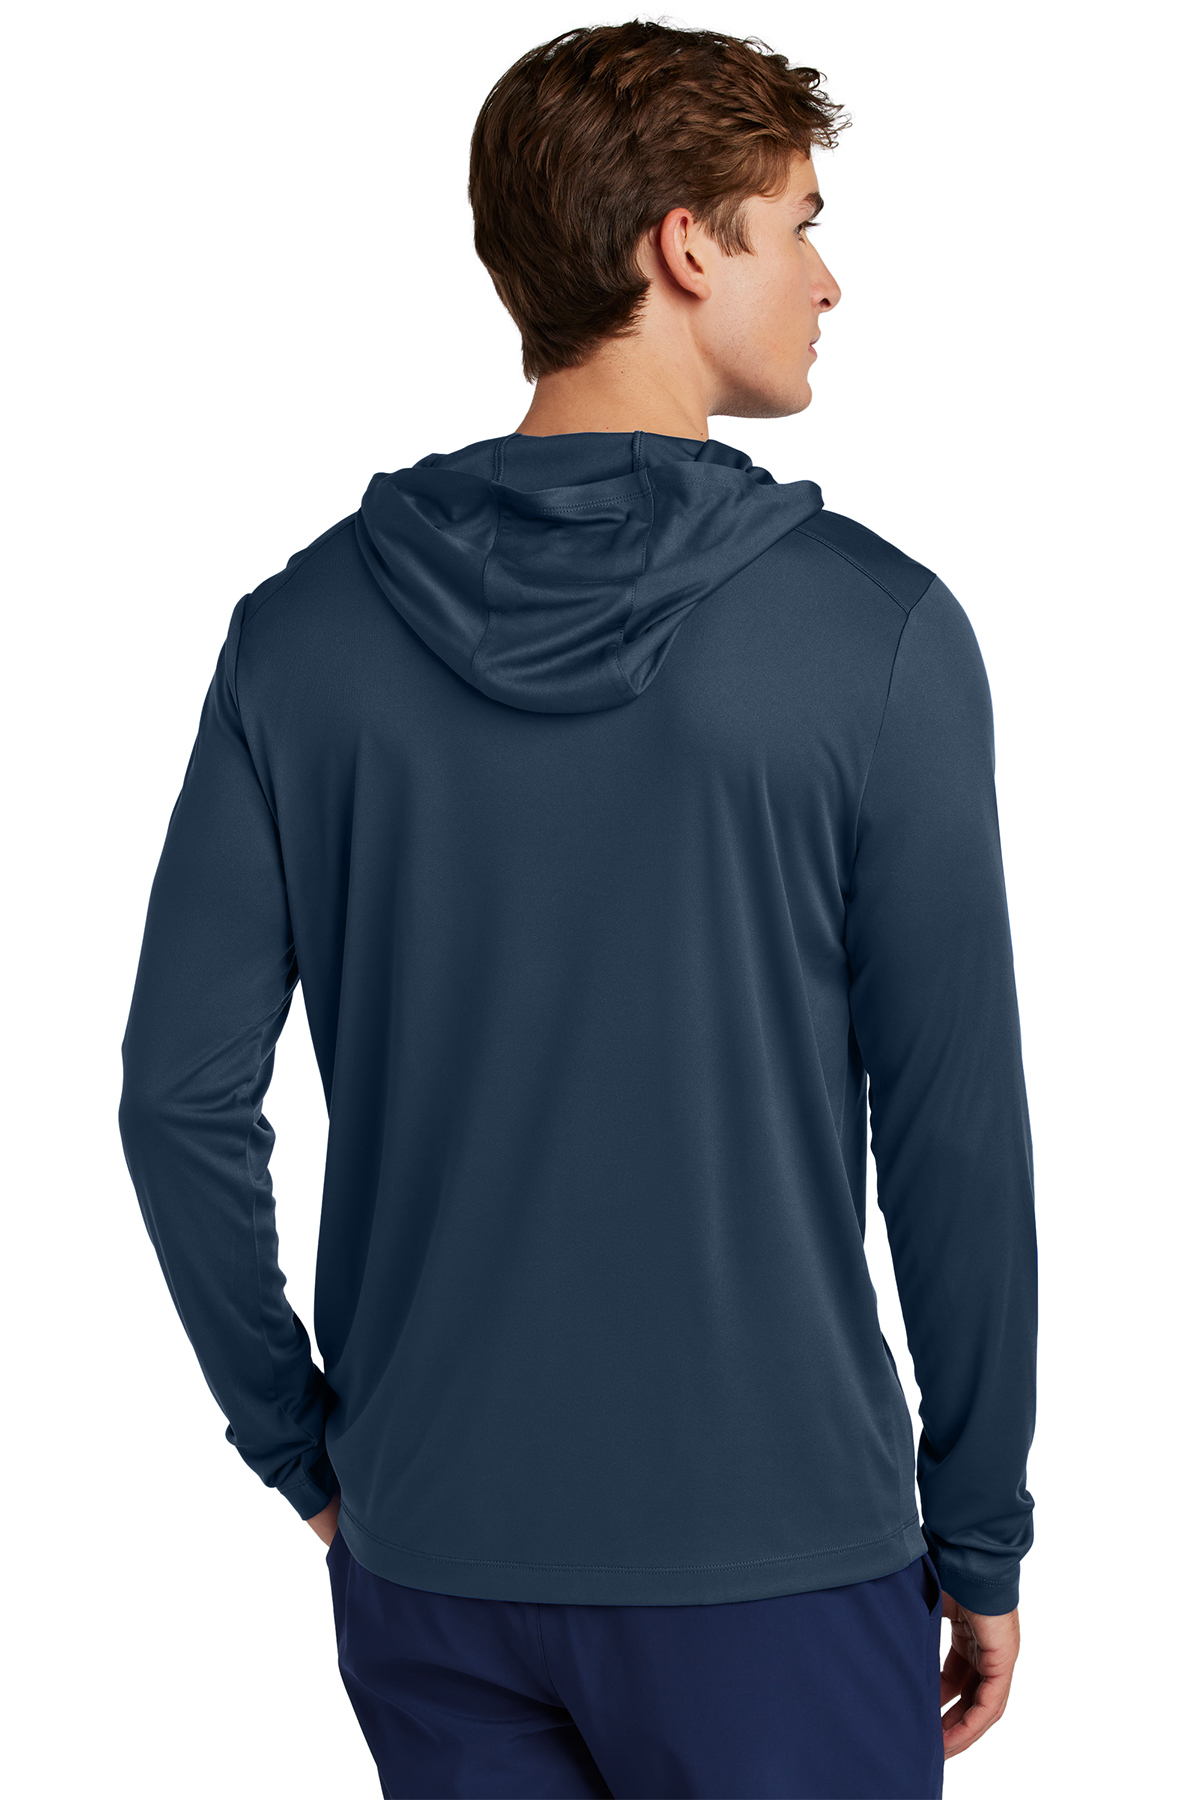 Sport-Tek Posi-UV Pro Long Sleeve Hoodie | Product | SanMar